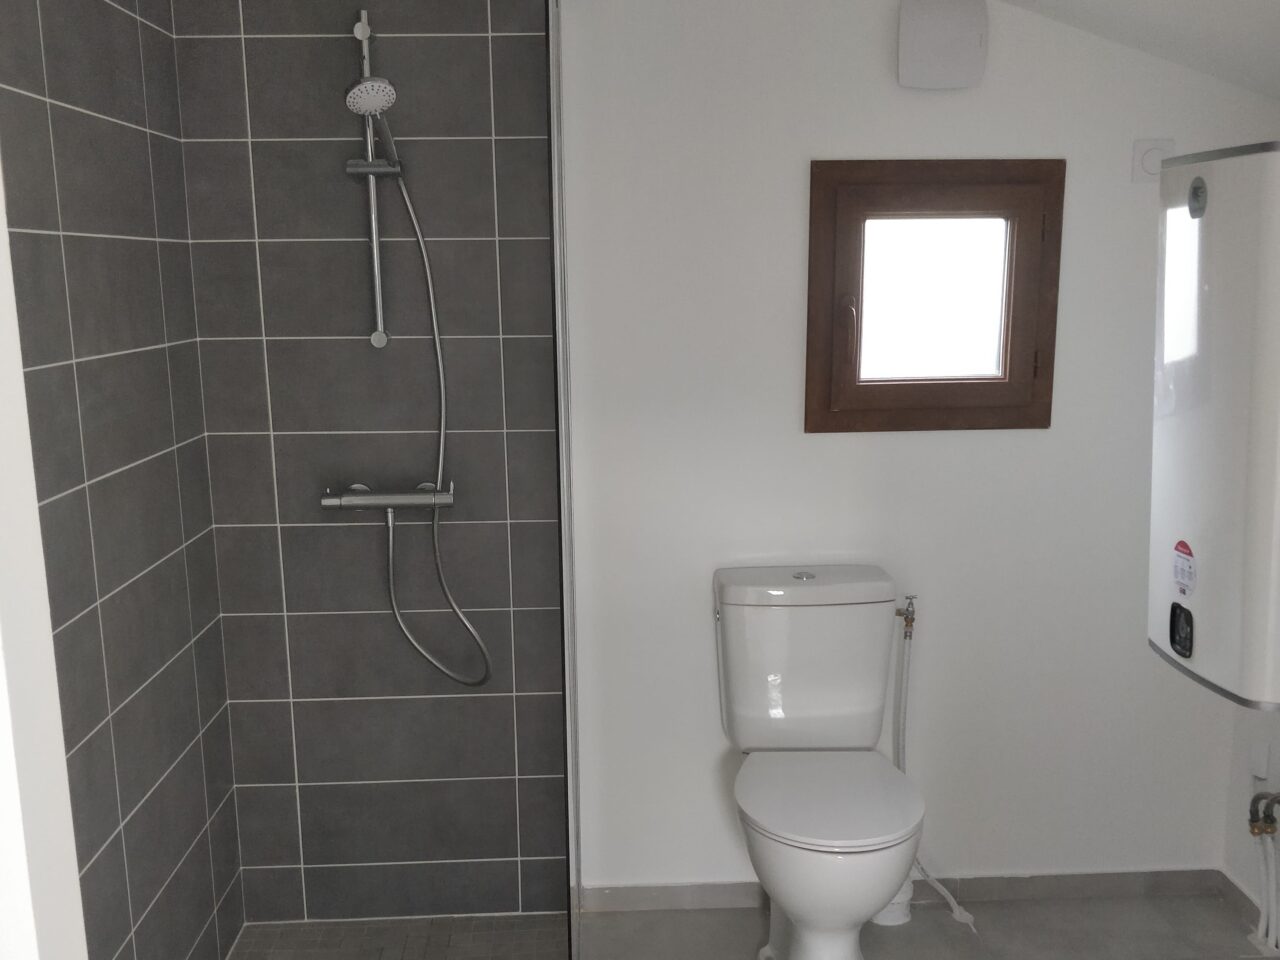 Le wc-douche, la toilette du futur - Déco Idées